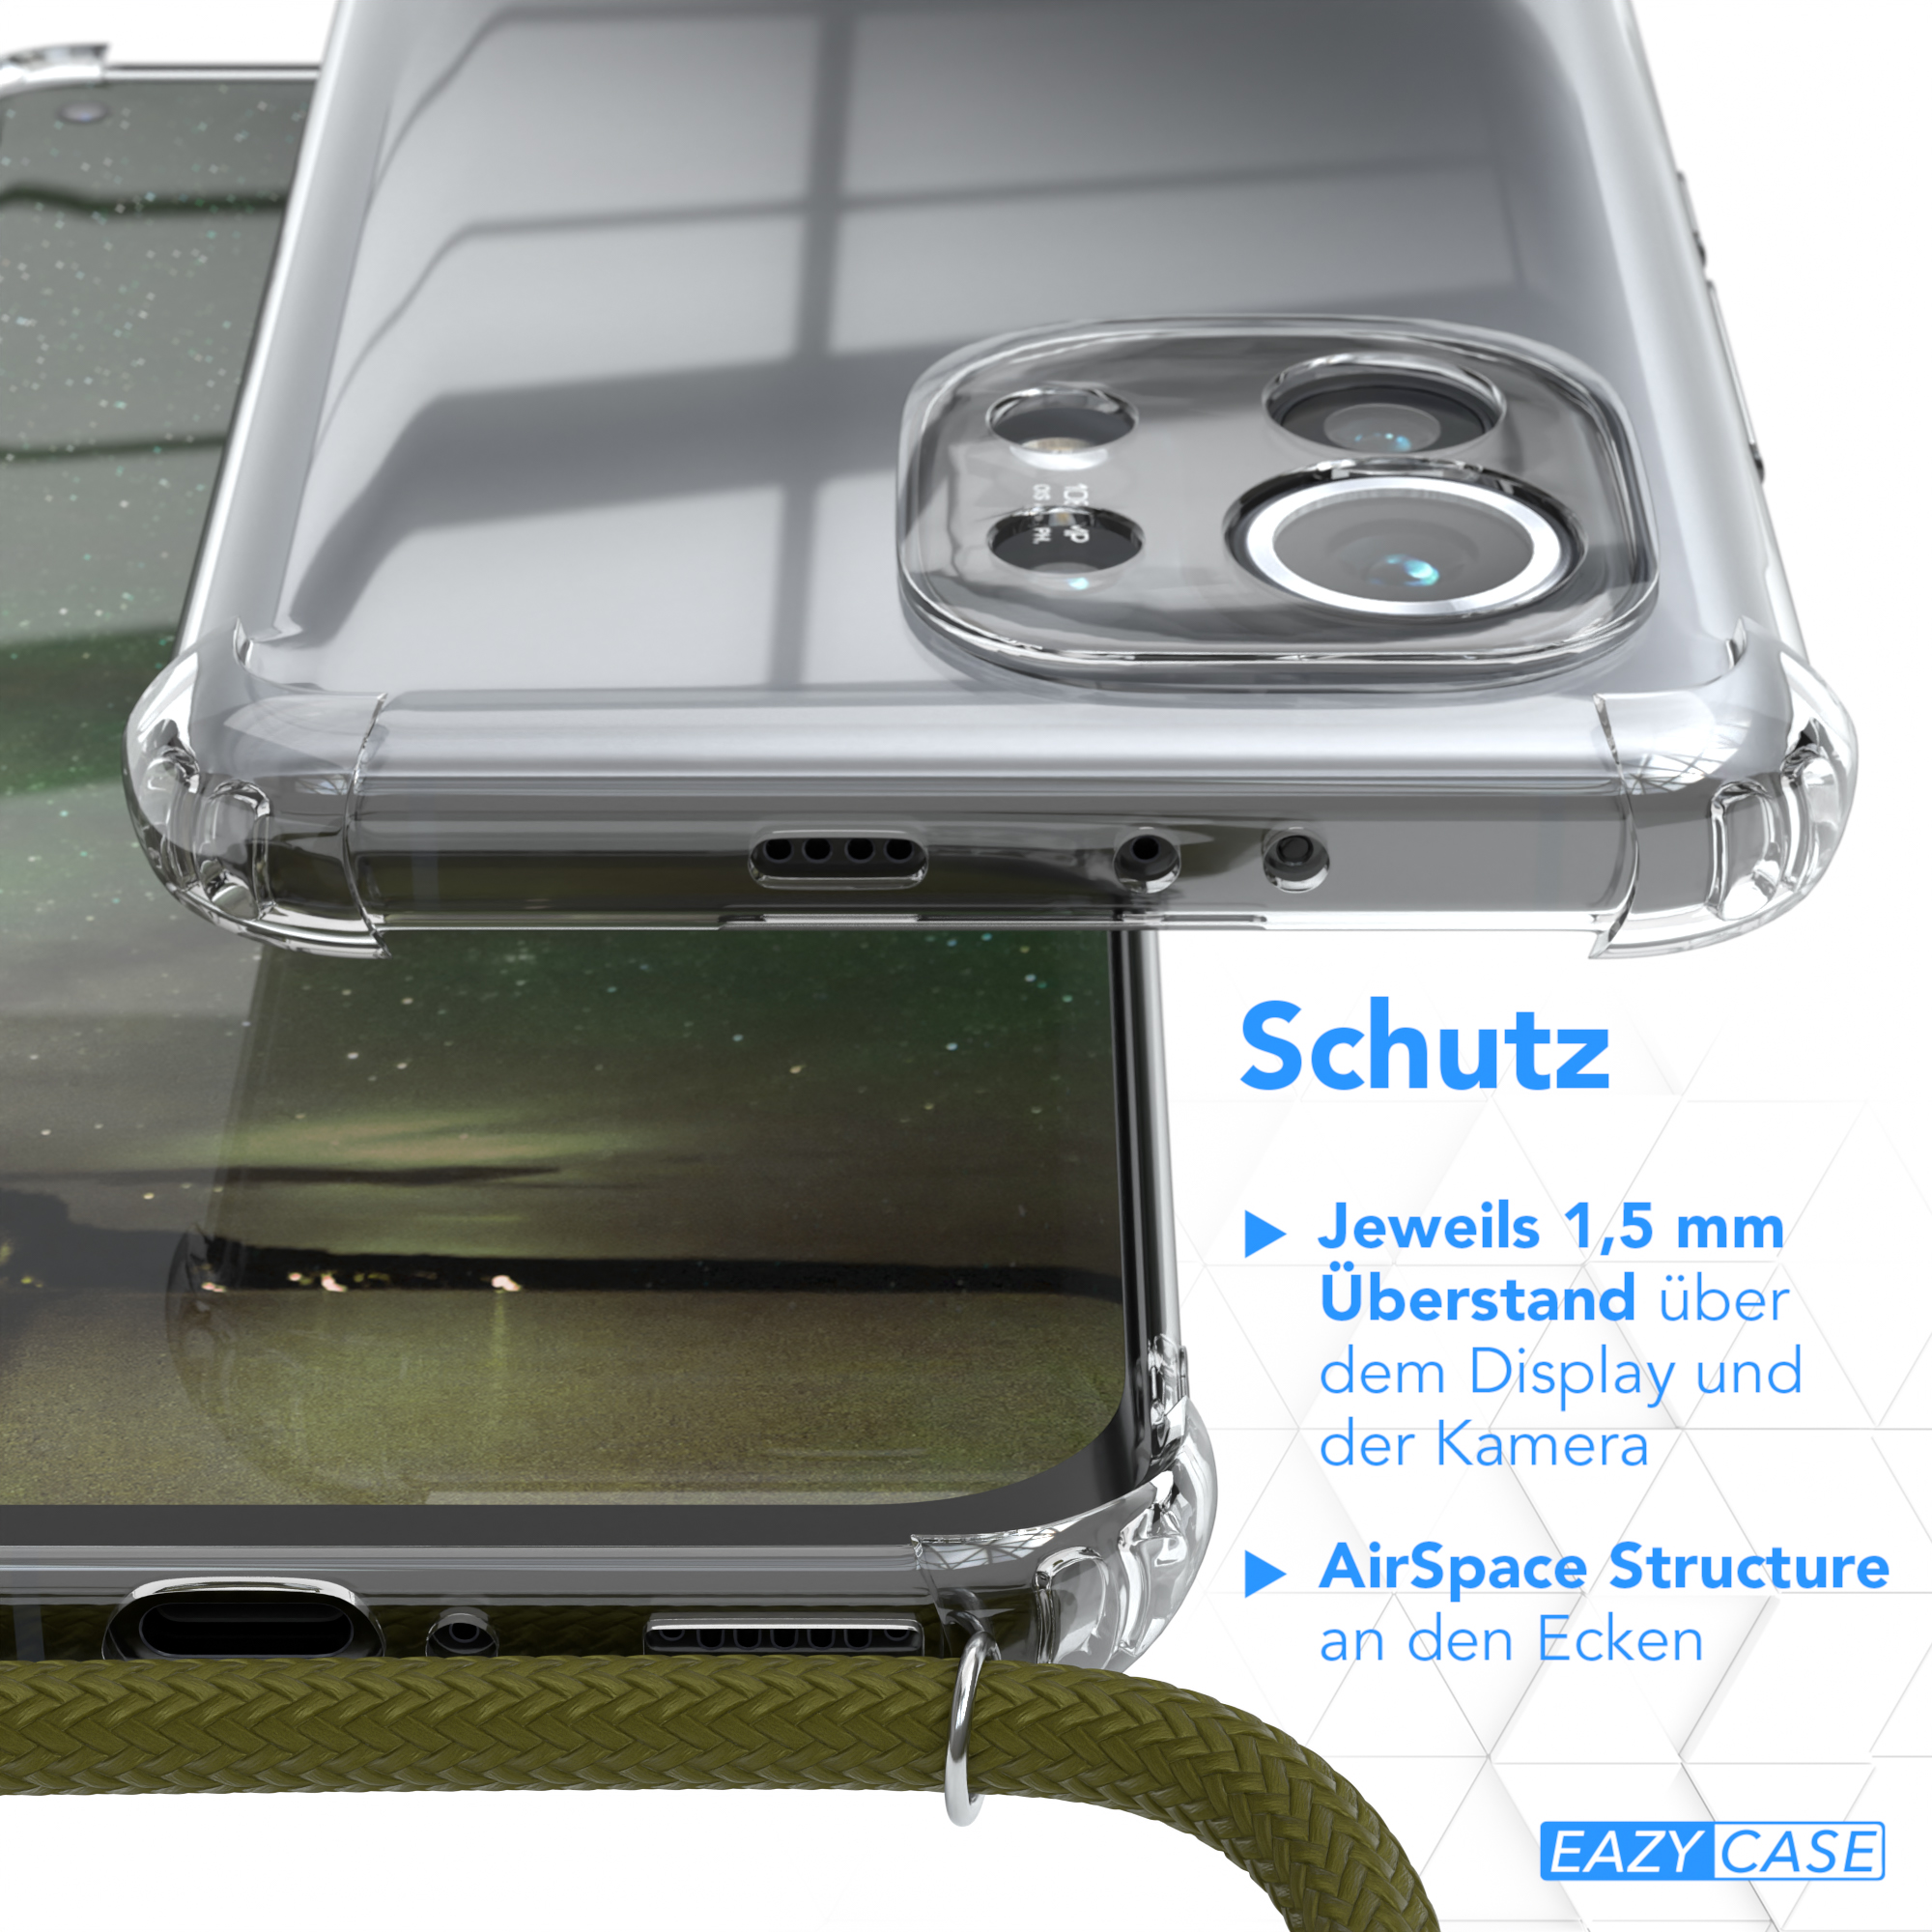 EAZY CASE Clear Cover mit 5G, Umhängetasche, Mi Grün Xiaomi, Olive Umhängeband, 11